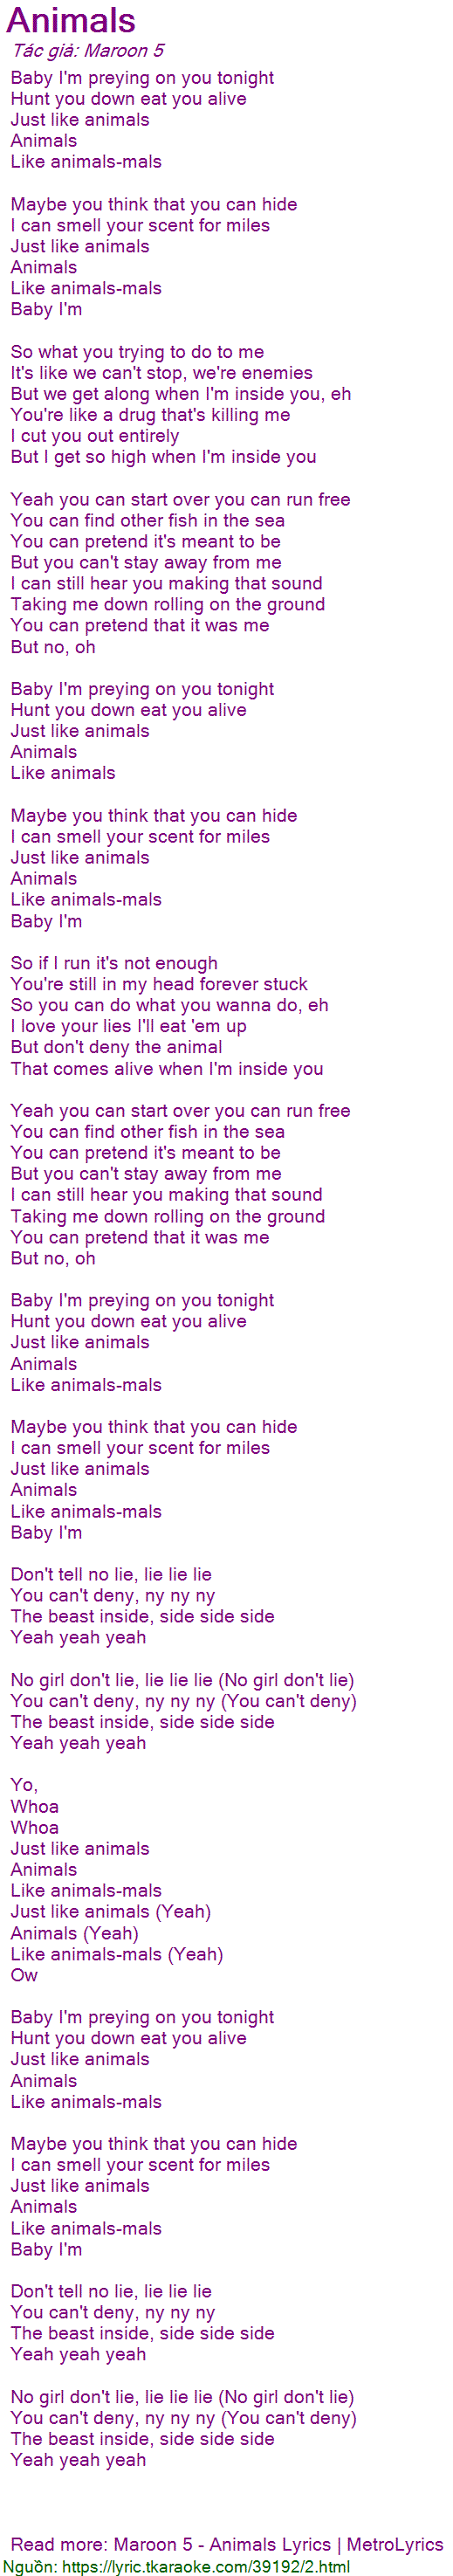 Lời bài hát Animals (Maroon 5) [có nhạc nghe]